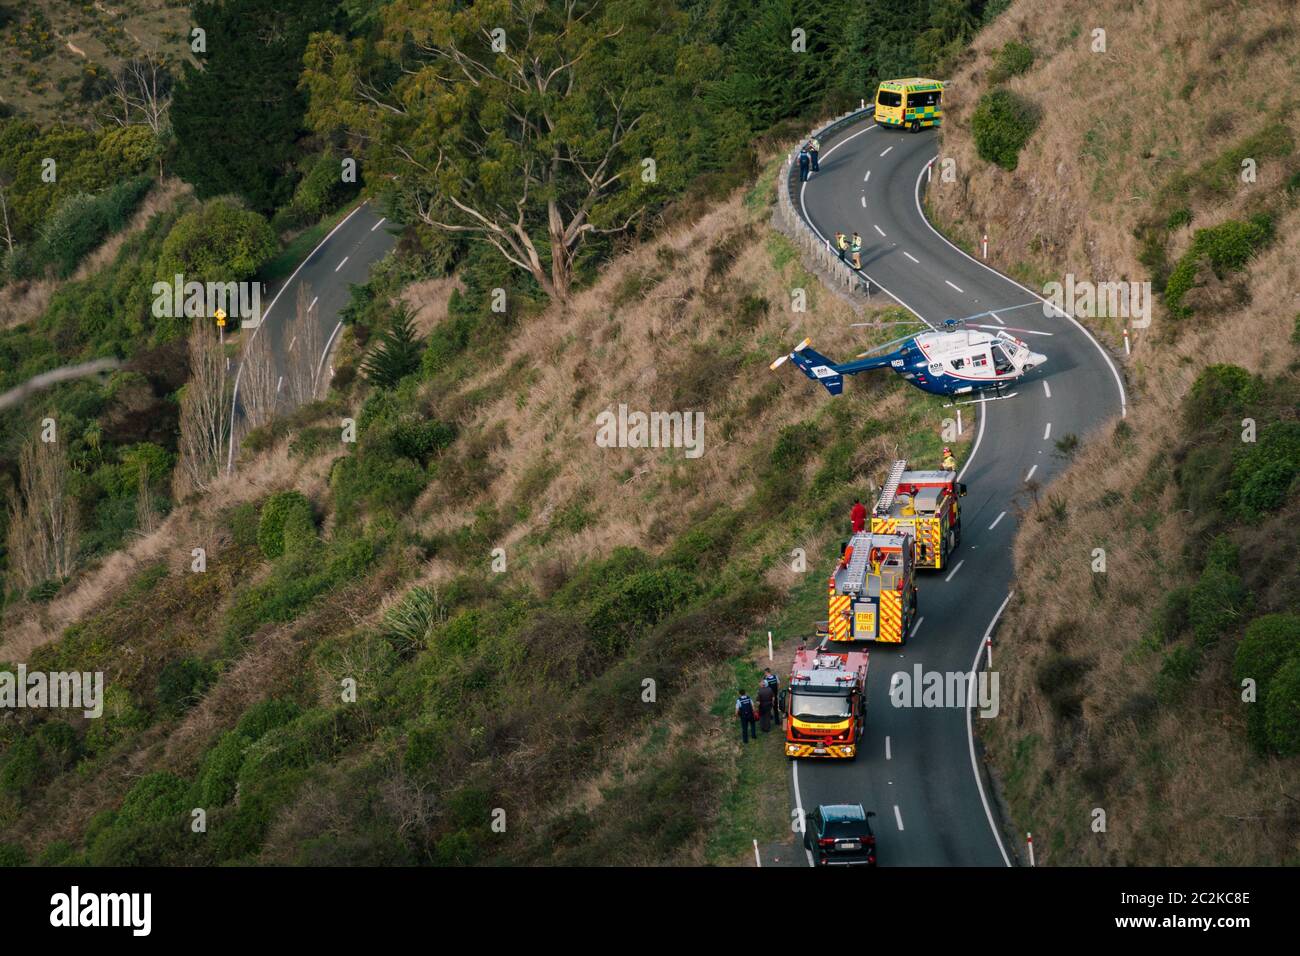 Un hélicoptère de secours est stationné sur la route tandis que les services d'urgence travaillent pour libérer le conducteur d'un véhicule en bas d'une colline à Christchurch, en Nouvelle-Zélande Banque D'Images